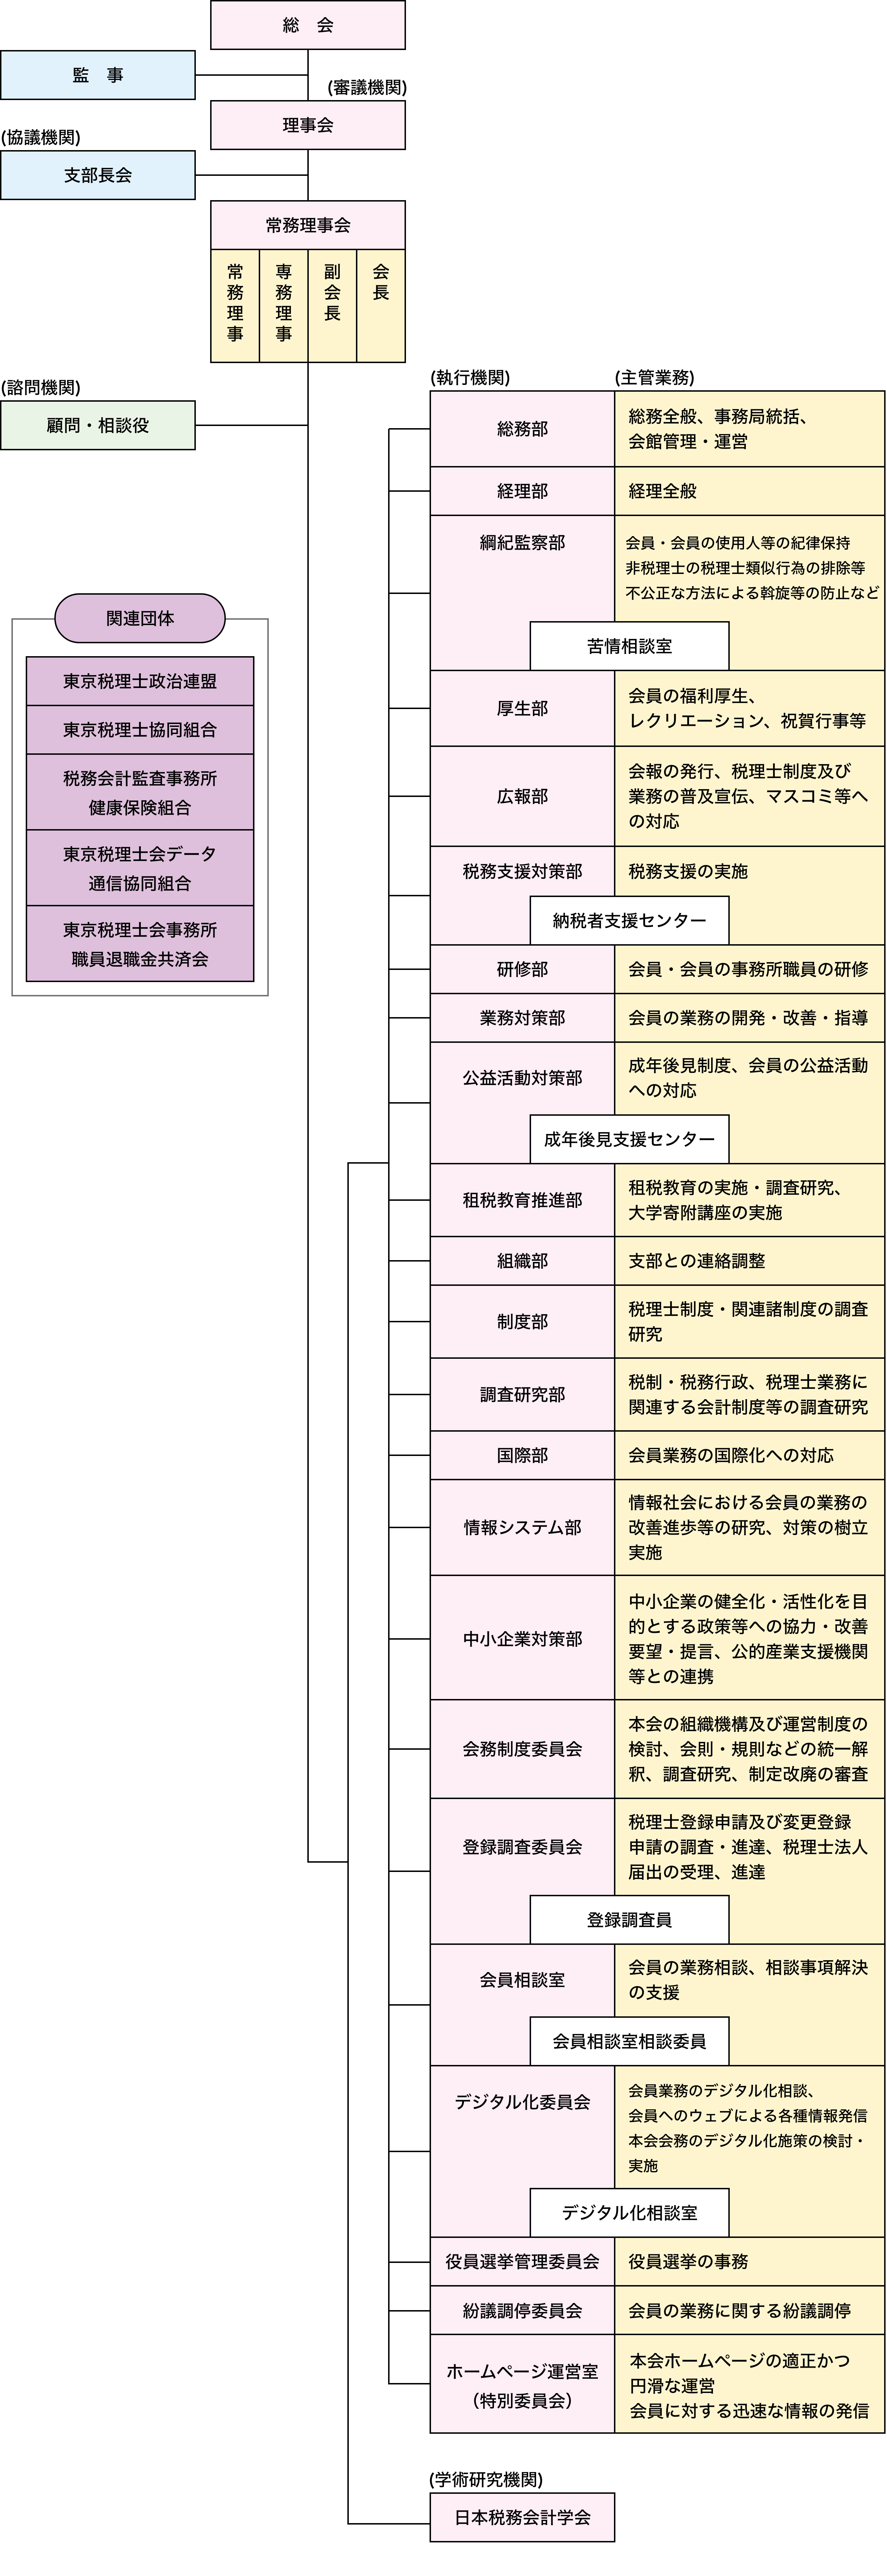 東京税理士会機構図